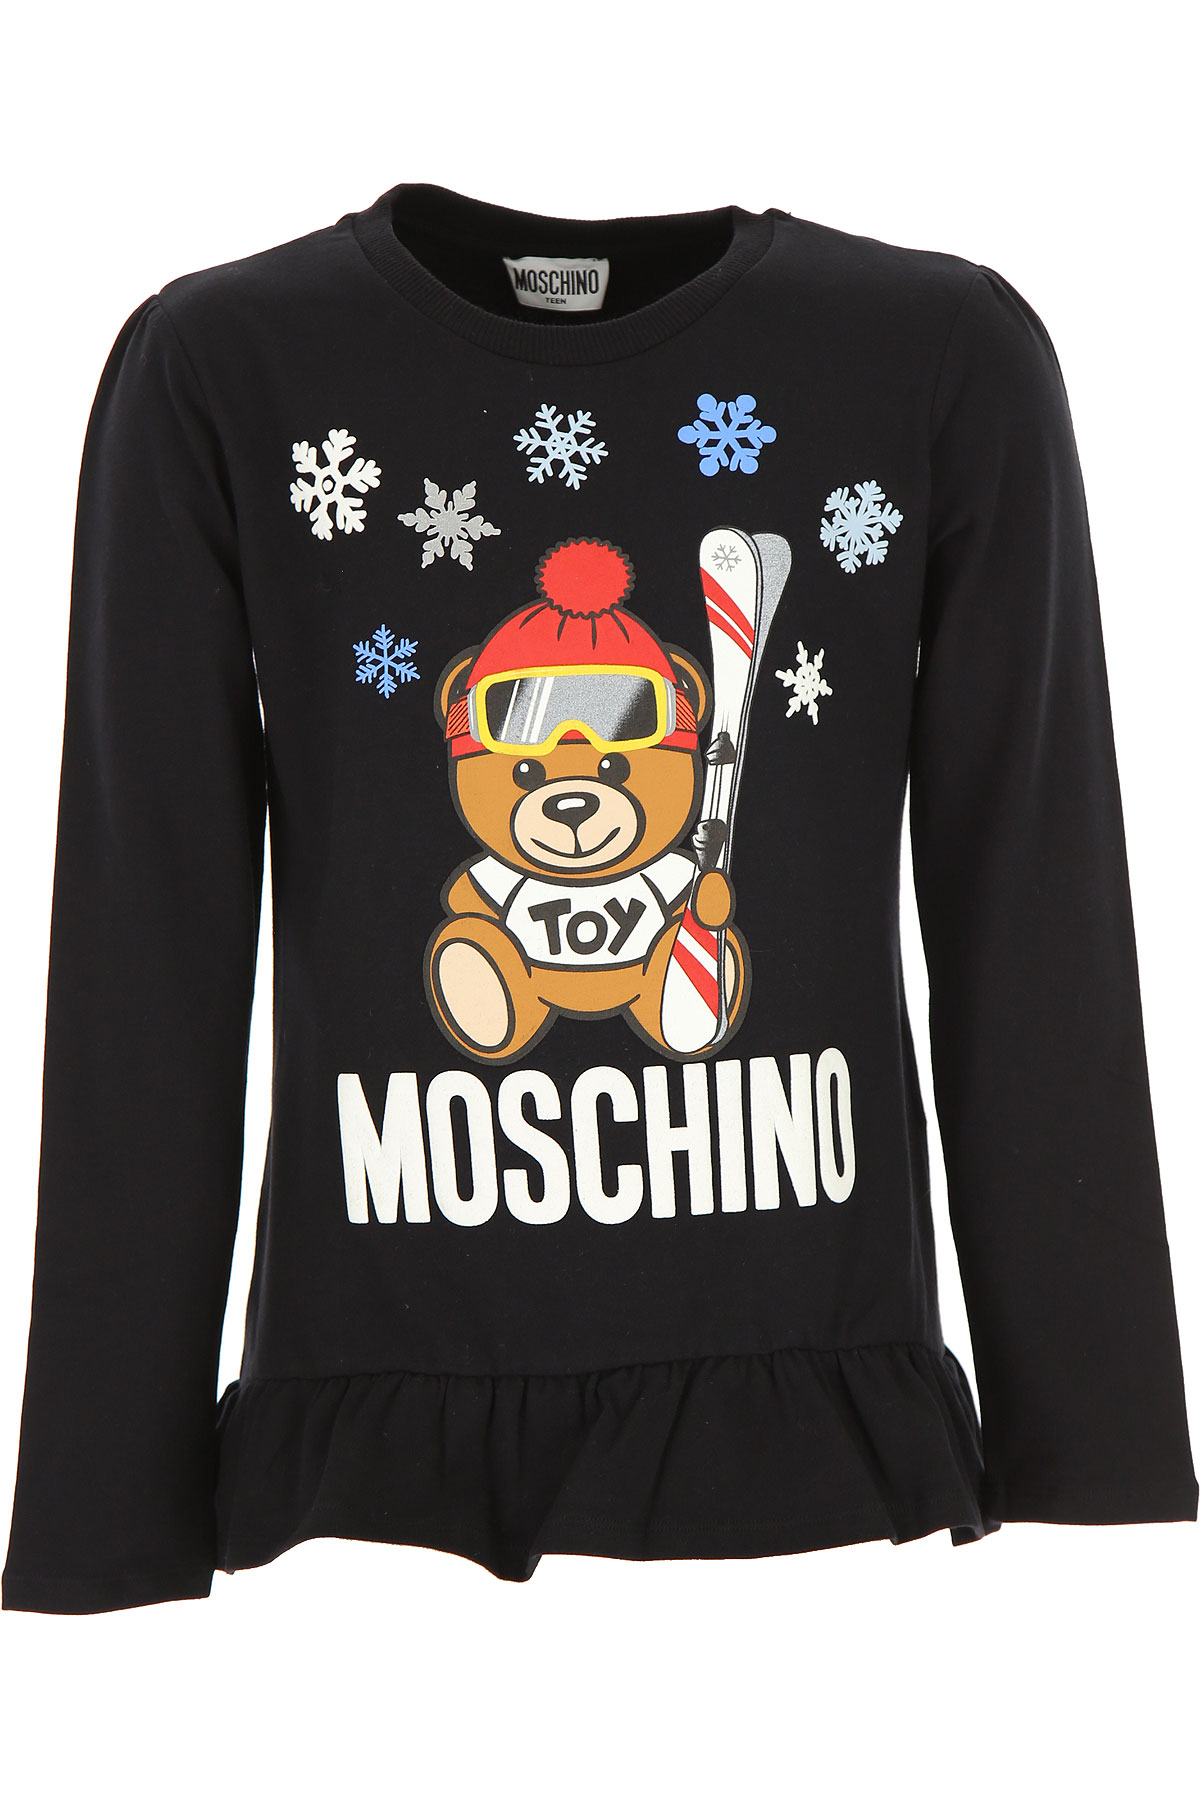 Moschino Kinder T-Shirt für Mädchen Günstig im Sale, Schwarz, Baumwolle, 2017, 10Y 12Y 14Y 4Y 5Y 6Y 8Y